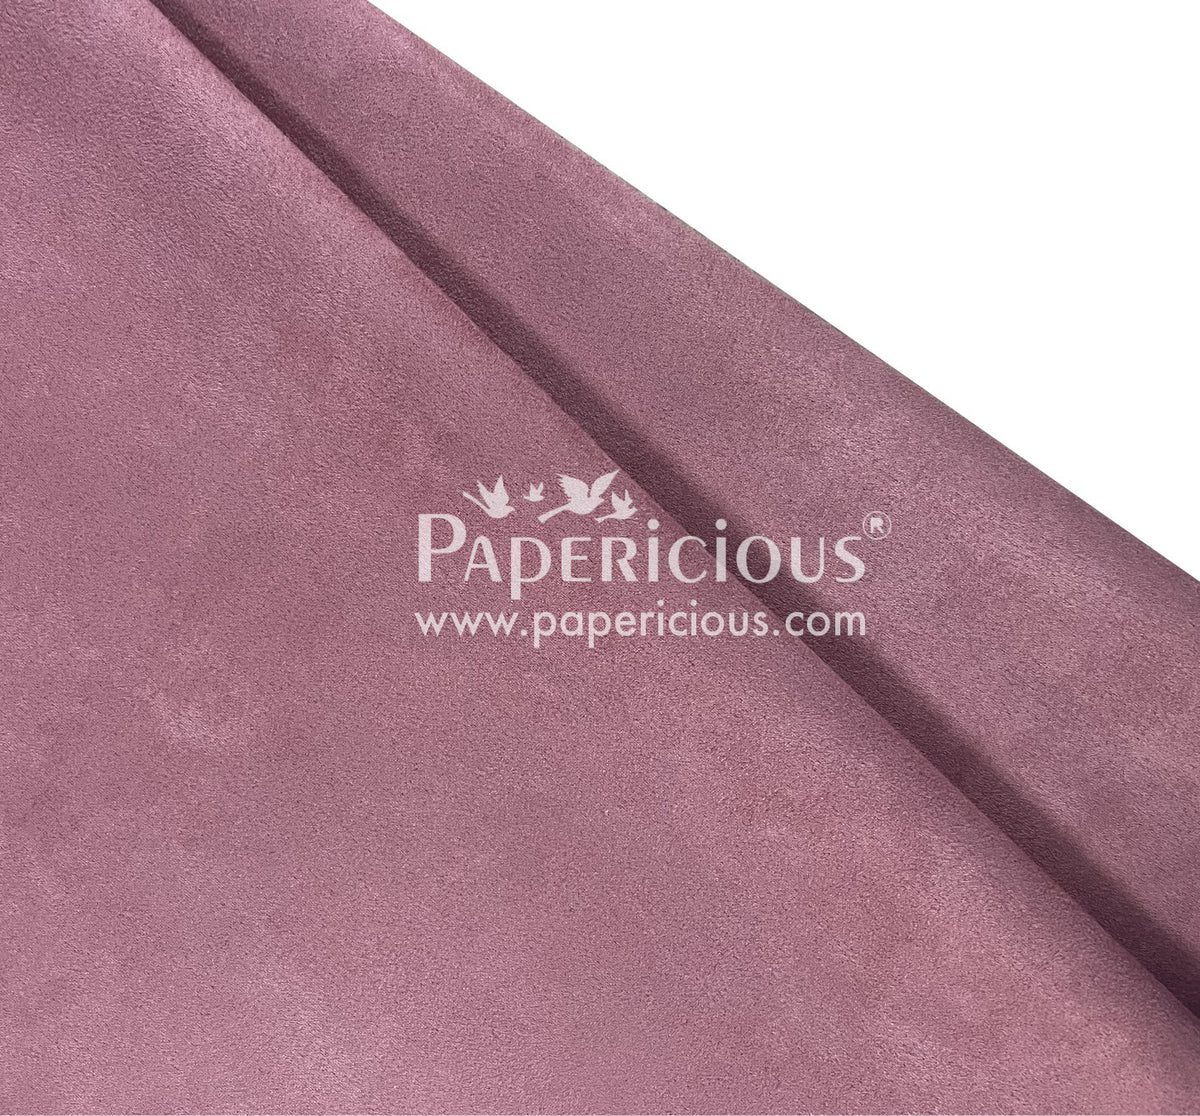 PAPERICIOUS - Suede Premium Fabric - Rosewood